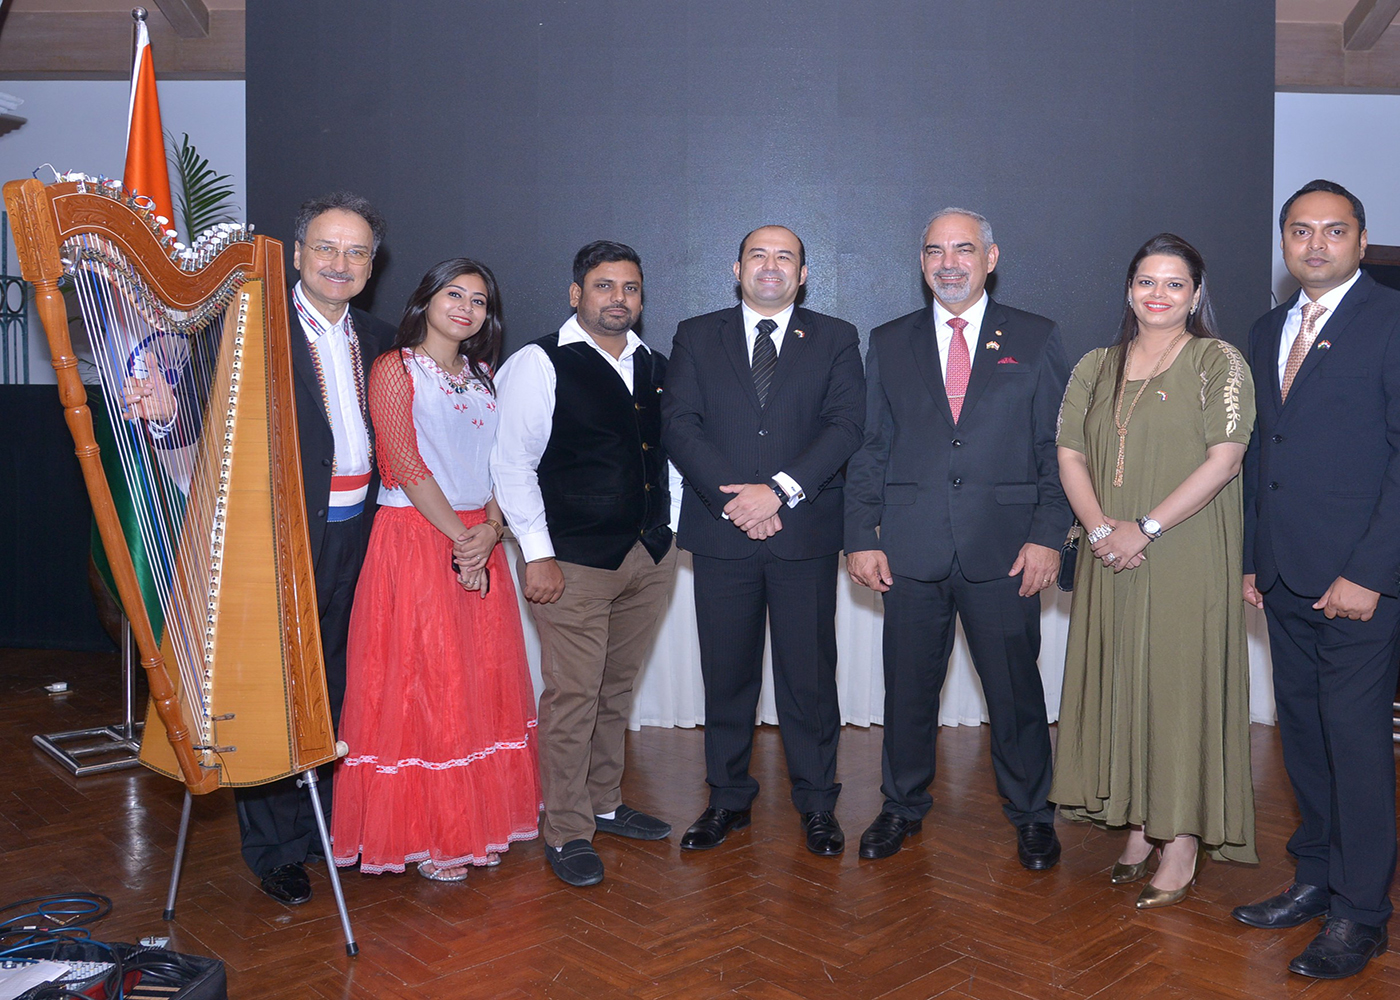 Embajada del Paraguay en India ofreció una recepción con motivo de la Fiesta Patria